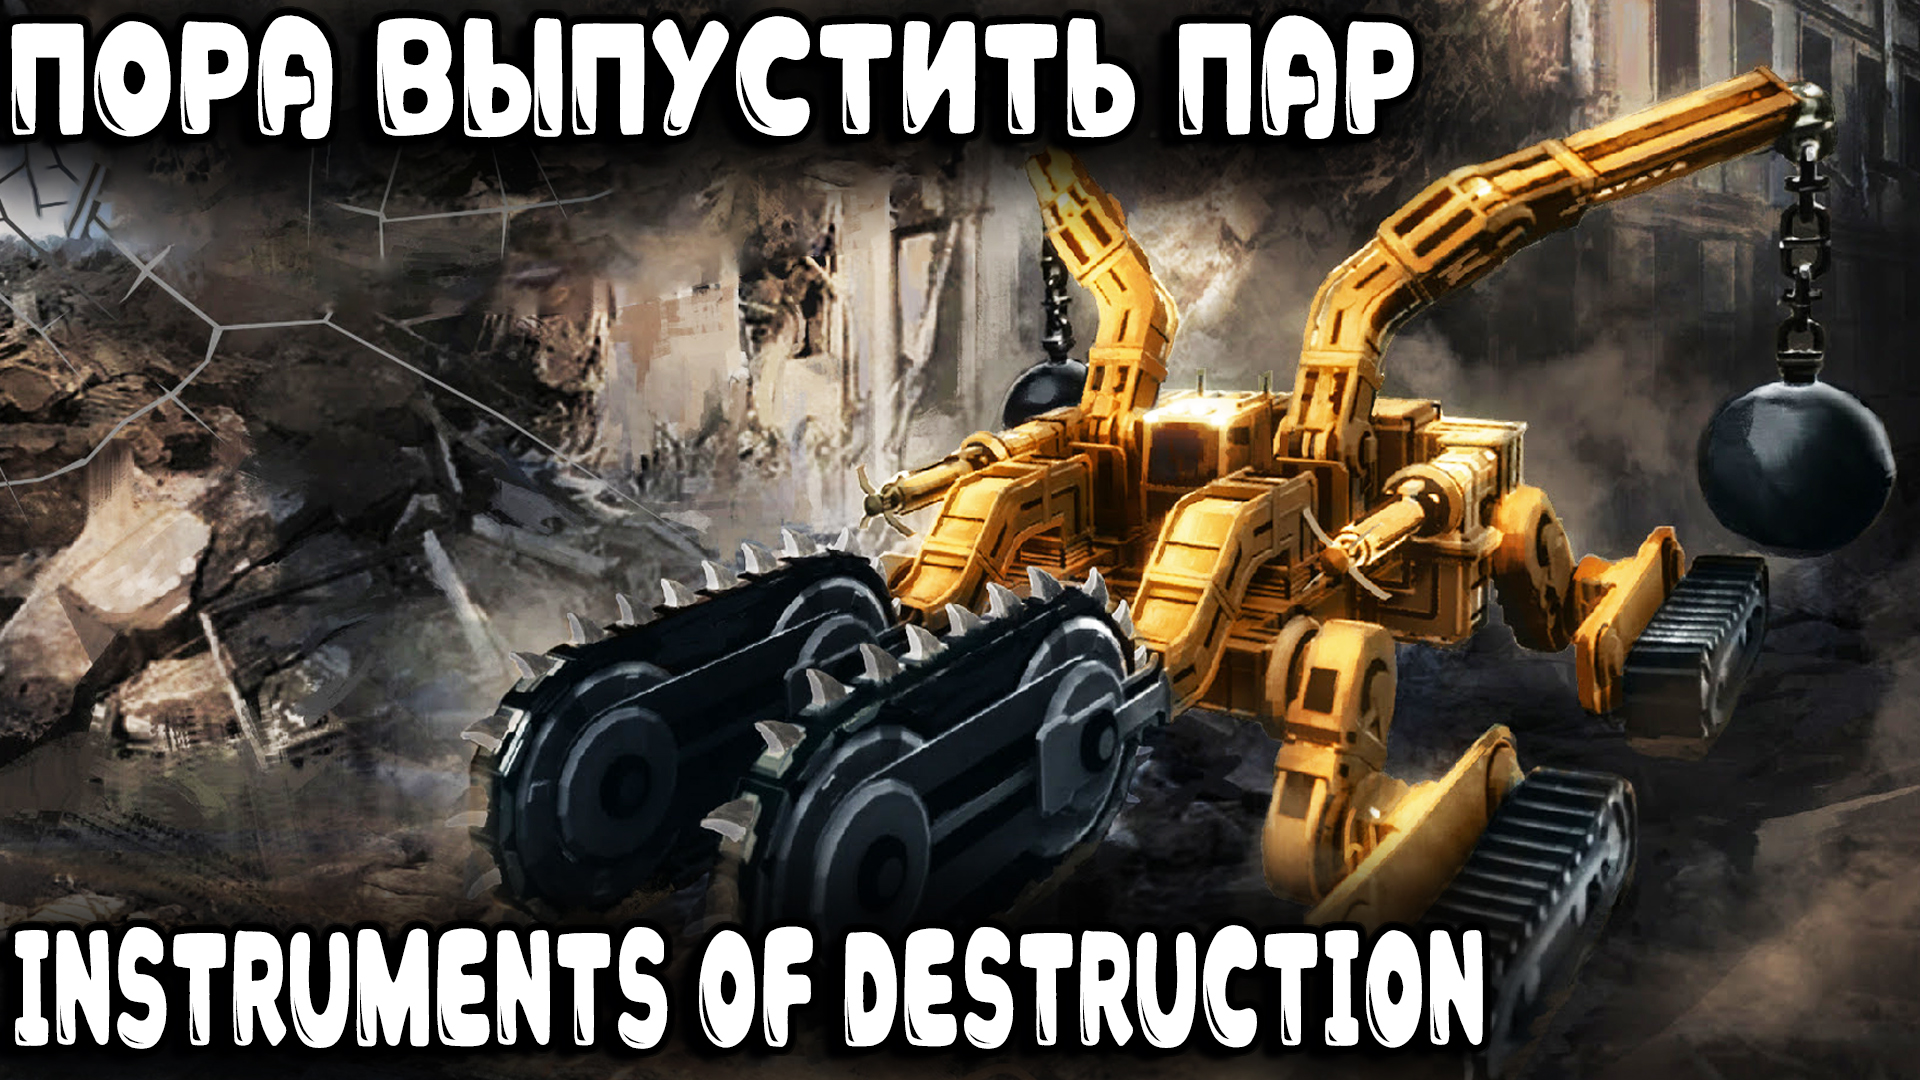 Instruments of Destruction - обзор и прохождение игры про физически реалистичные разрушения зданий